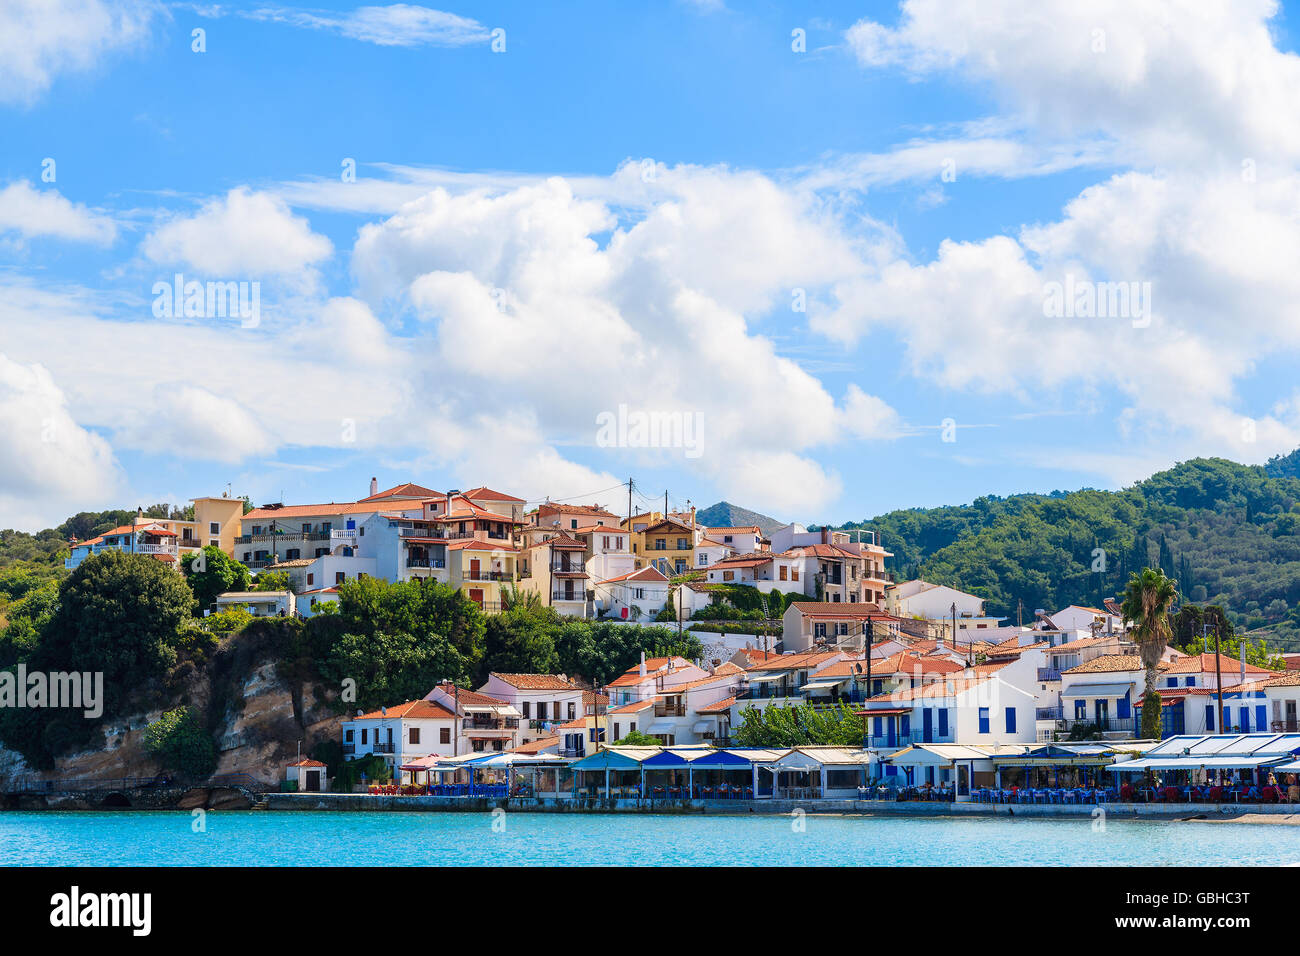 Vue de Kokkari village aux maisons colorées sur la côte de l'île de Samos, Grèce Banque D'Images